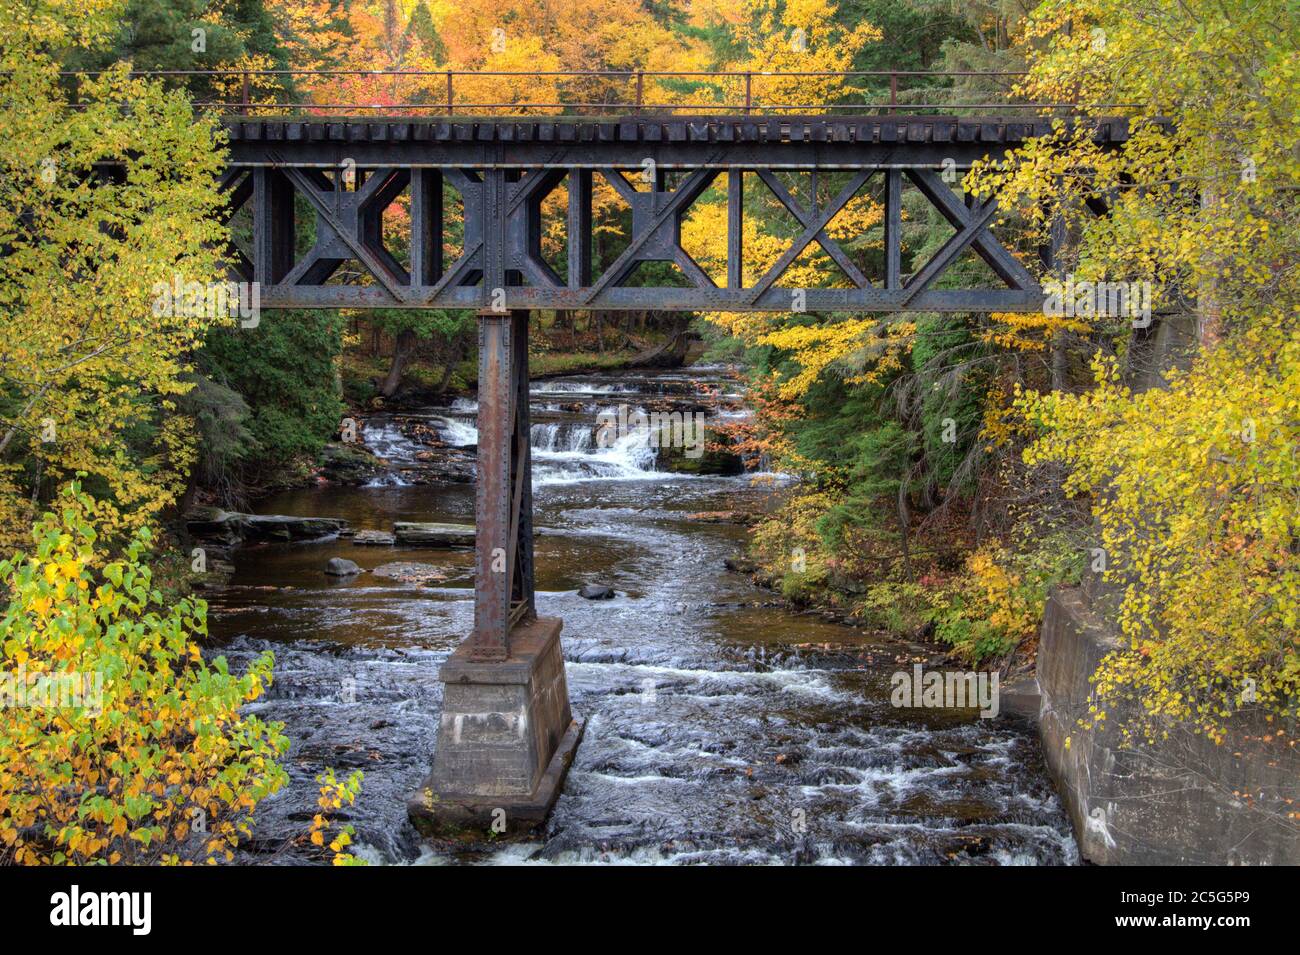 Eisenbahnbrücke über einen Fluss mit einem Wasserfall im Hintergrund, umgeben von lebhaften Herbstfarben in einer kleinen Stadt auf der Upper Peninsula in Michigan. Stockfoto